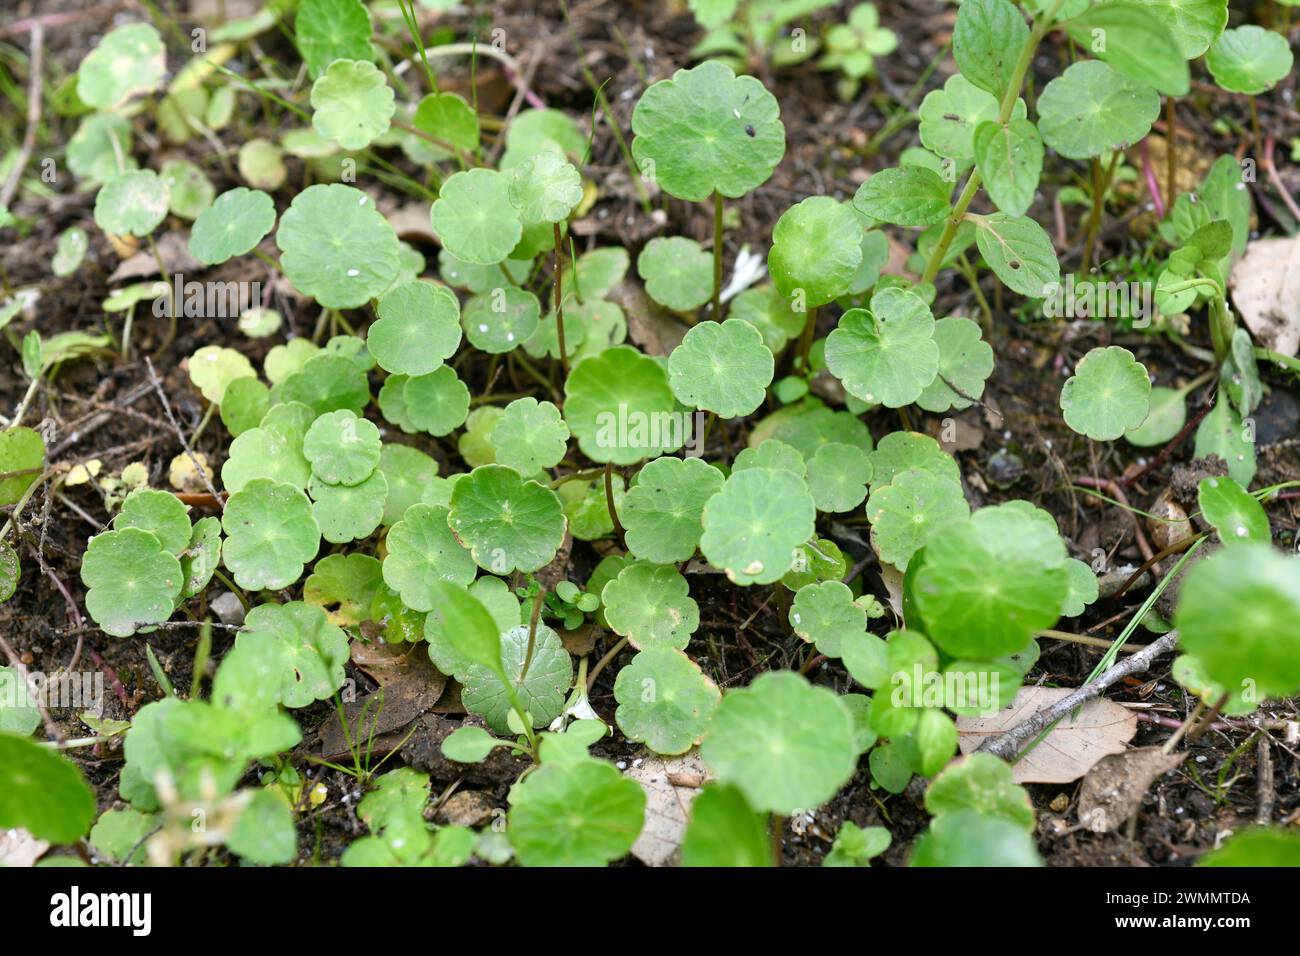 La peniywort (Hydrocotyle vulgaris) es una hierba acuática perenne nativa de Europa y Turquía. Crece en pantanos y turberas. Foto de stock